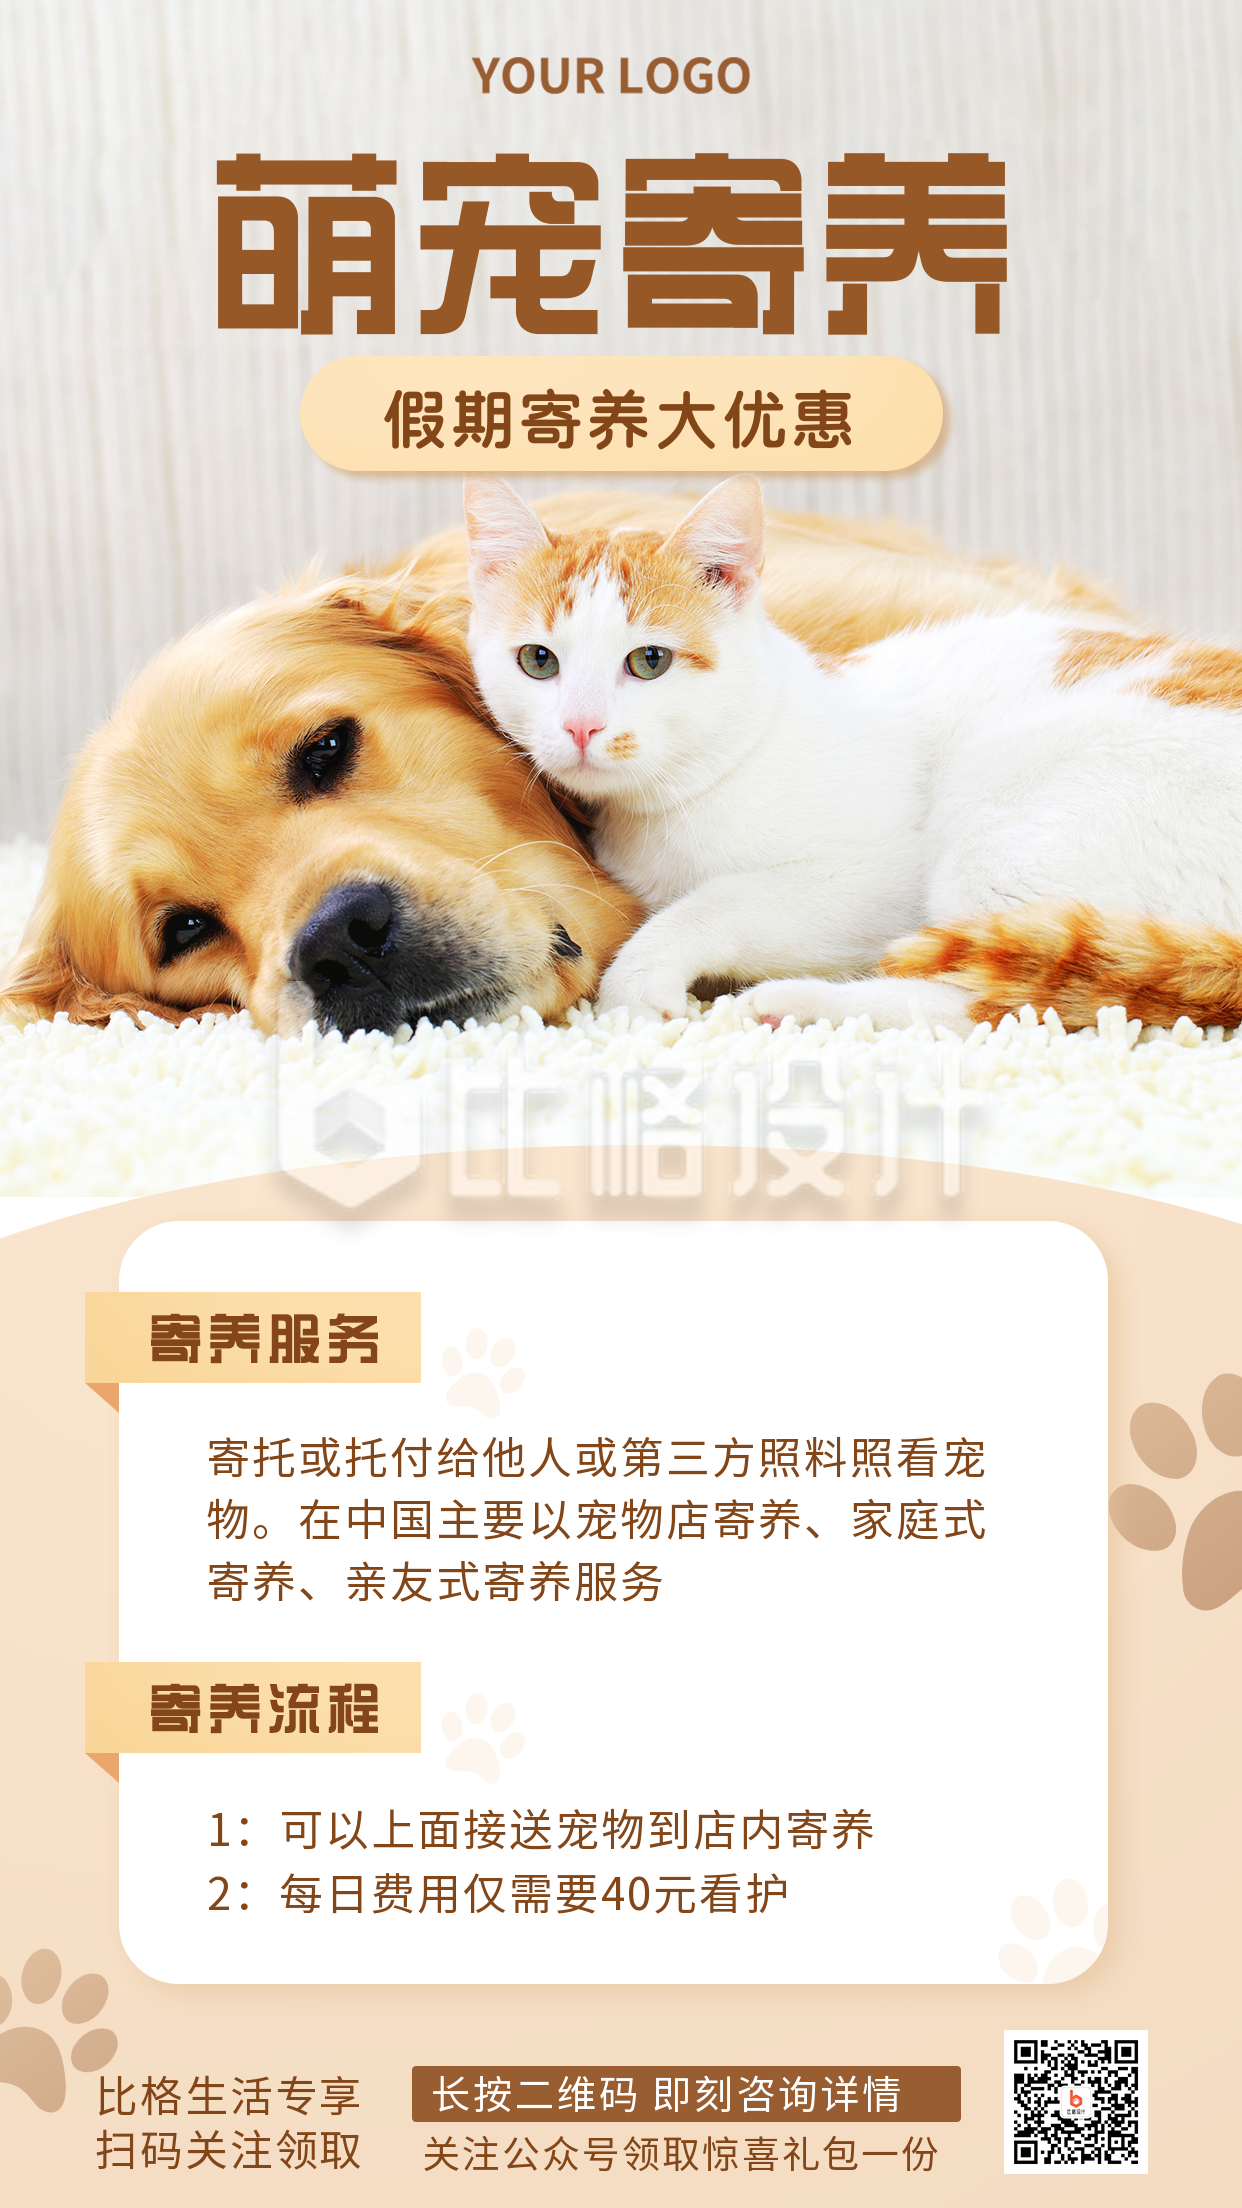 宠物寄养活动特惠推广宣传手机海报